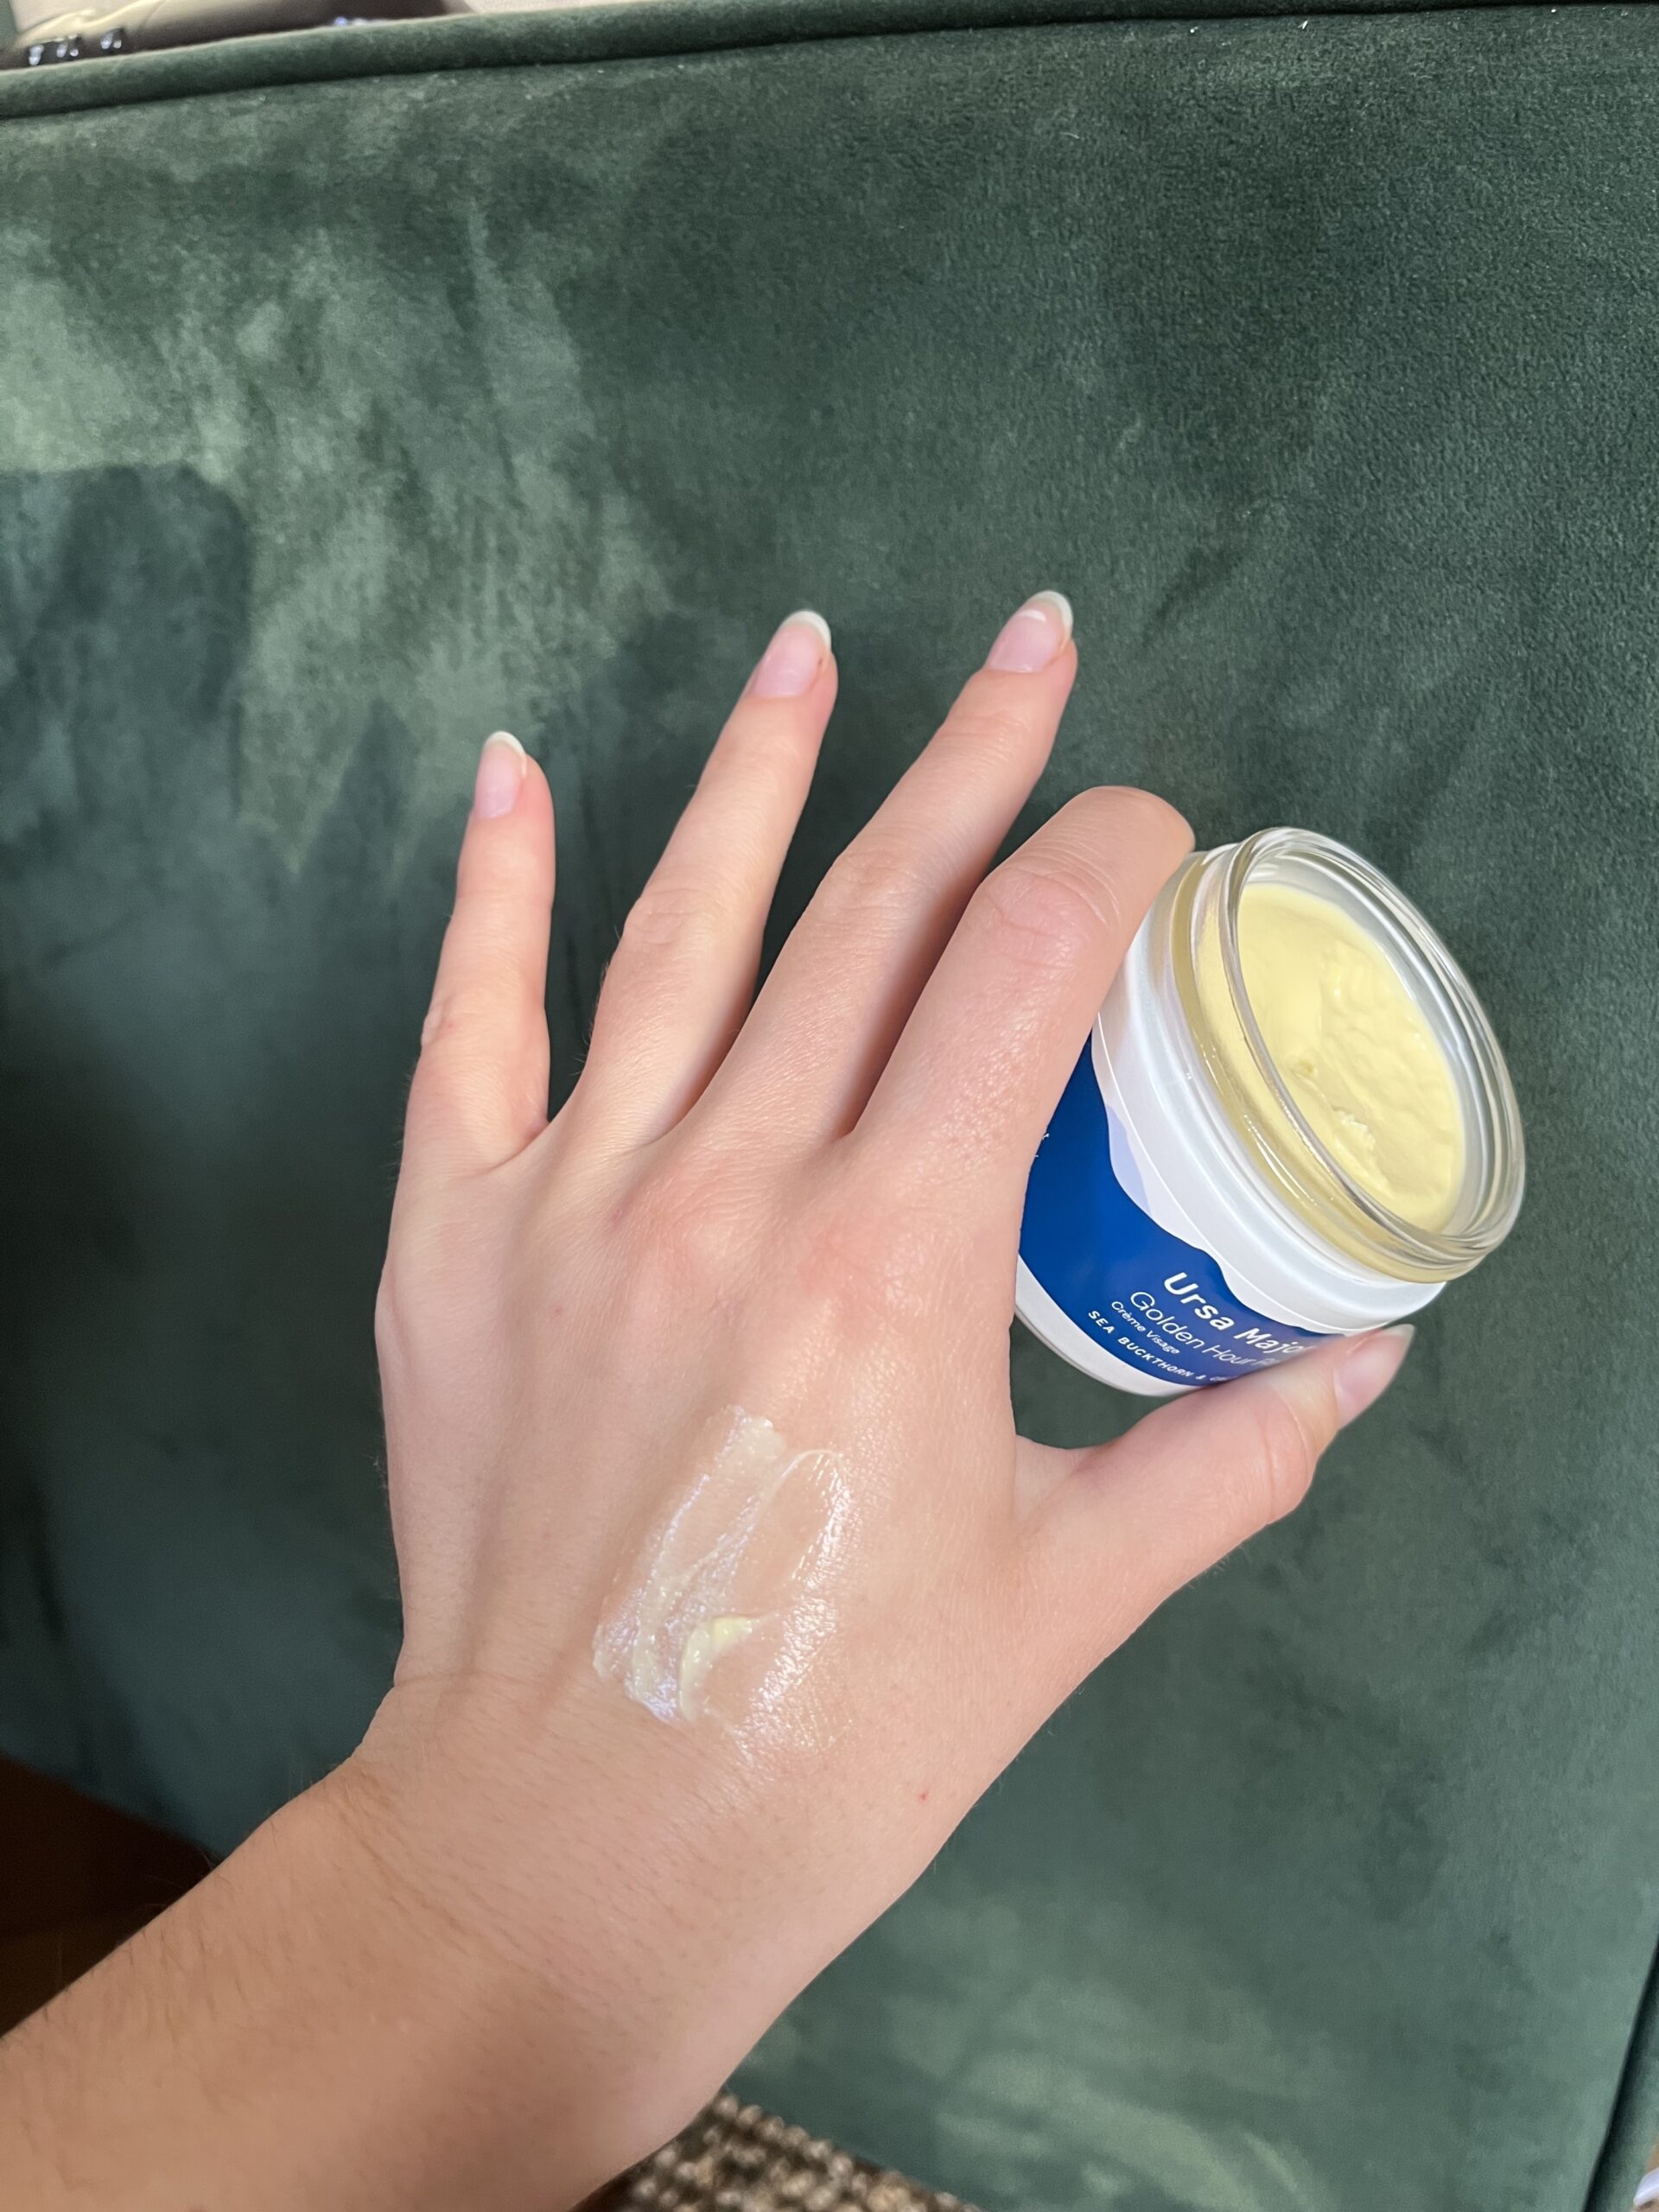 A hand holding Ursa Major cream